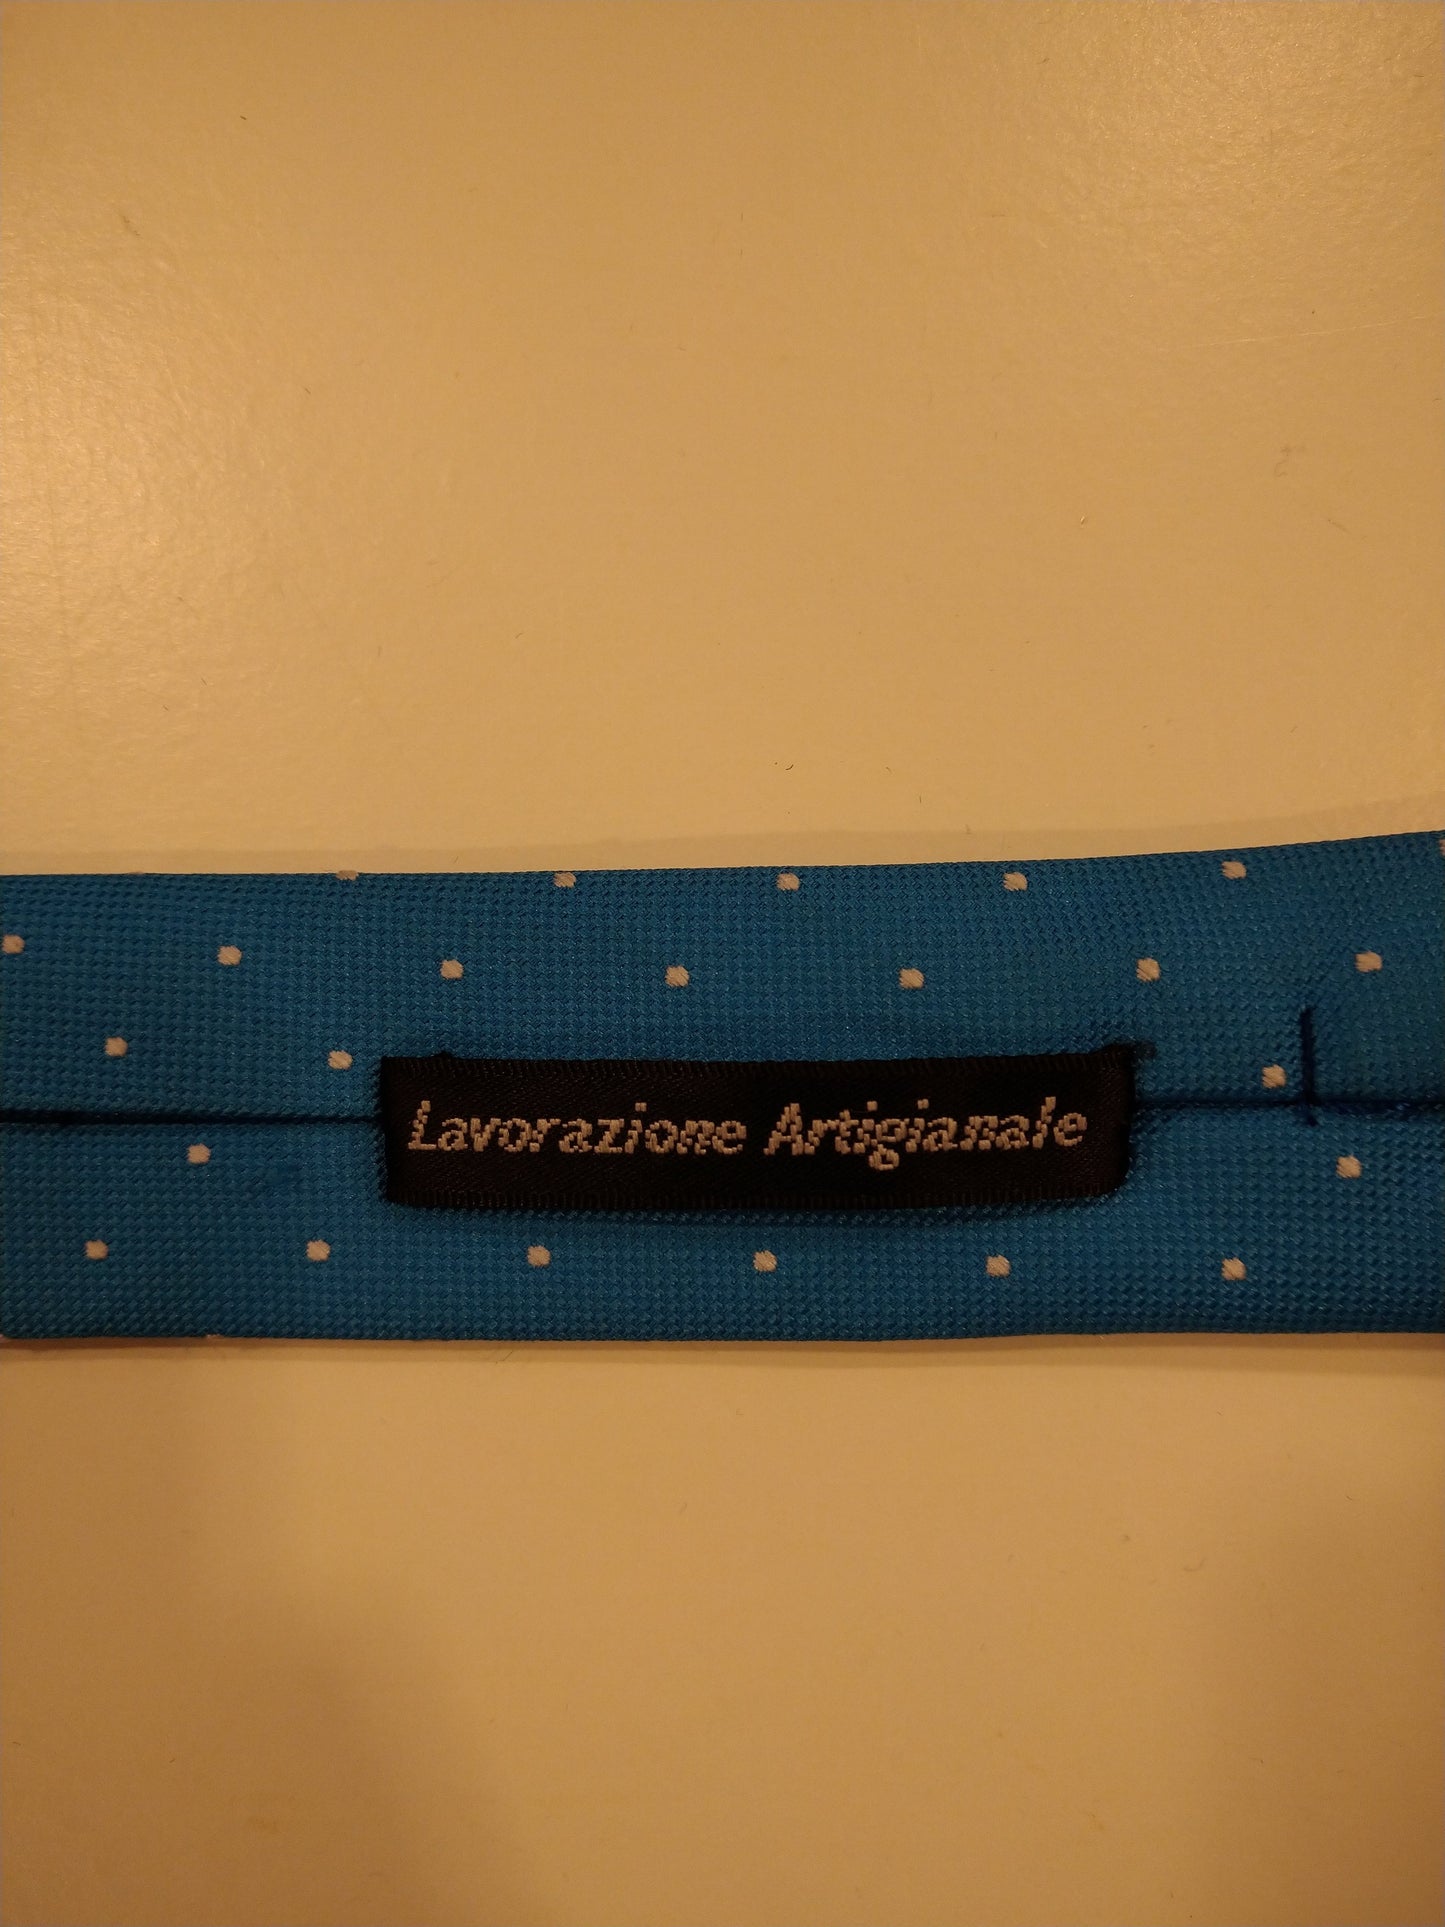 La corbata artigianale de Ladazione. Motivo de punto blanco azul.